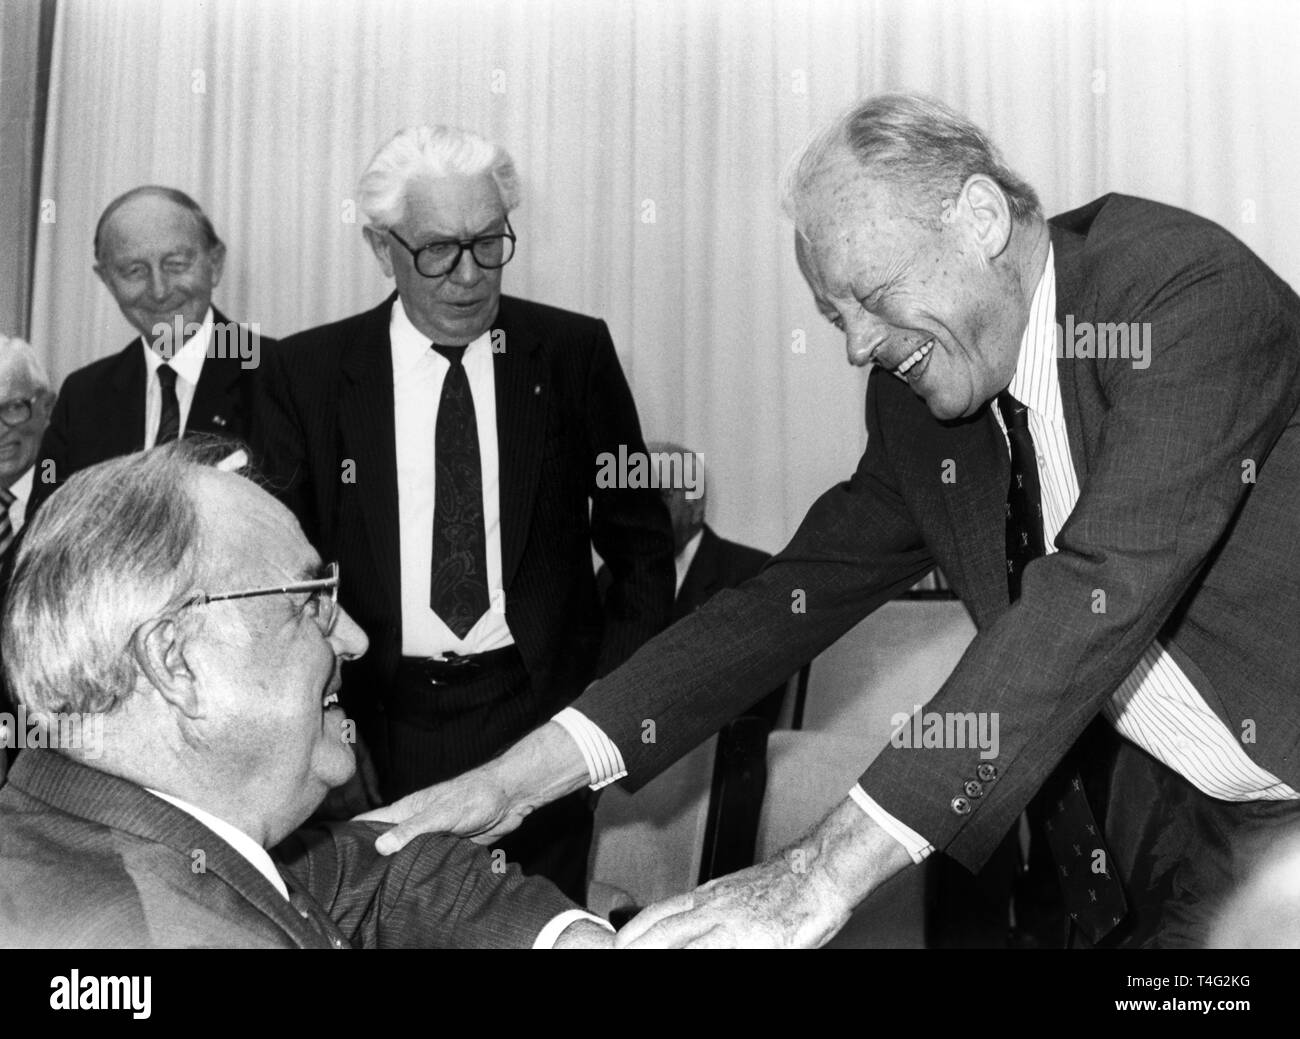 Bundestag e Bundesrat hanno celebrato il loro quarantesimo anniversario il 07 settembre 1989. Nel separare le ore di commemorazione hanno ricordato le prime conferenze di entrambe le istituzioni legislative a Bonn il 07 settembre 1949. Nella foto, ci sono il Cancelliere tedesco Helmut Kohl (L) e il DOCUP presidente onorario Willy Brandt (R) all'inizio della commemorazione del Bundesrat. Sullo sfondo si vede la ex Presidente tedesco Kai-Uwe von HASSEL (M) e l'ex ministro-presidente del Baden-Wurttemberg, Hans Filbinger (L). | Utilizzo di tutto il mondo Foto Stock